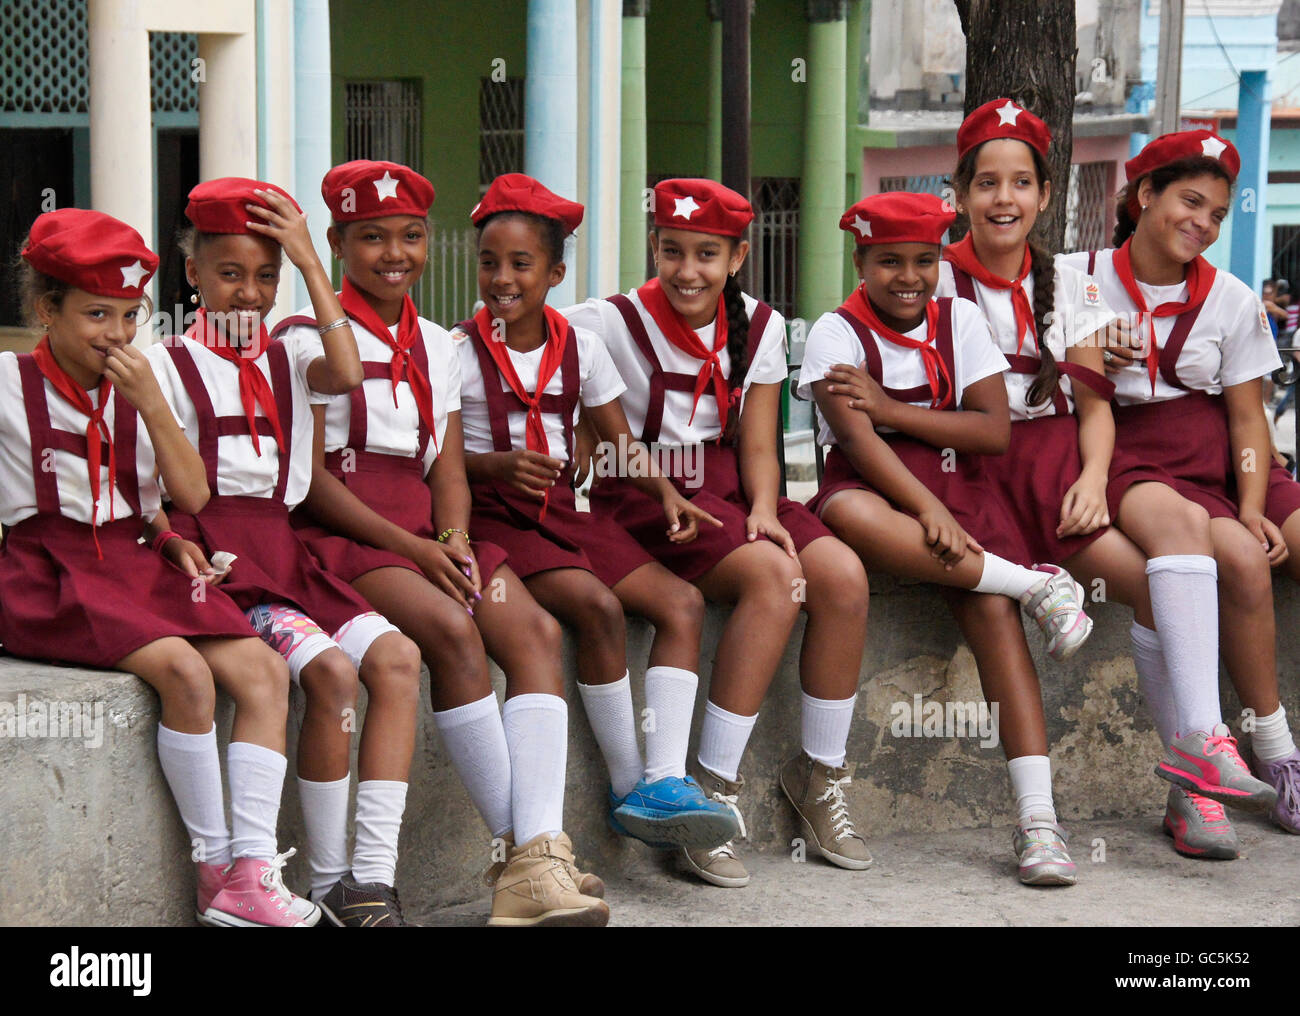 Las niñas ('Young Pioneers") en la escuela primaria, regla uniforme, Cuba Foto de stock